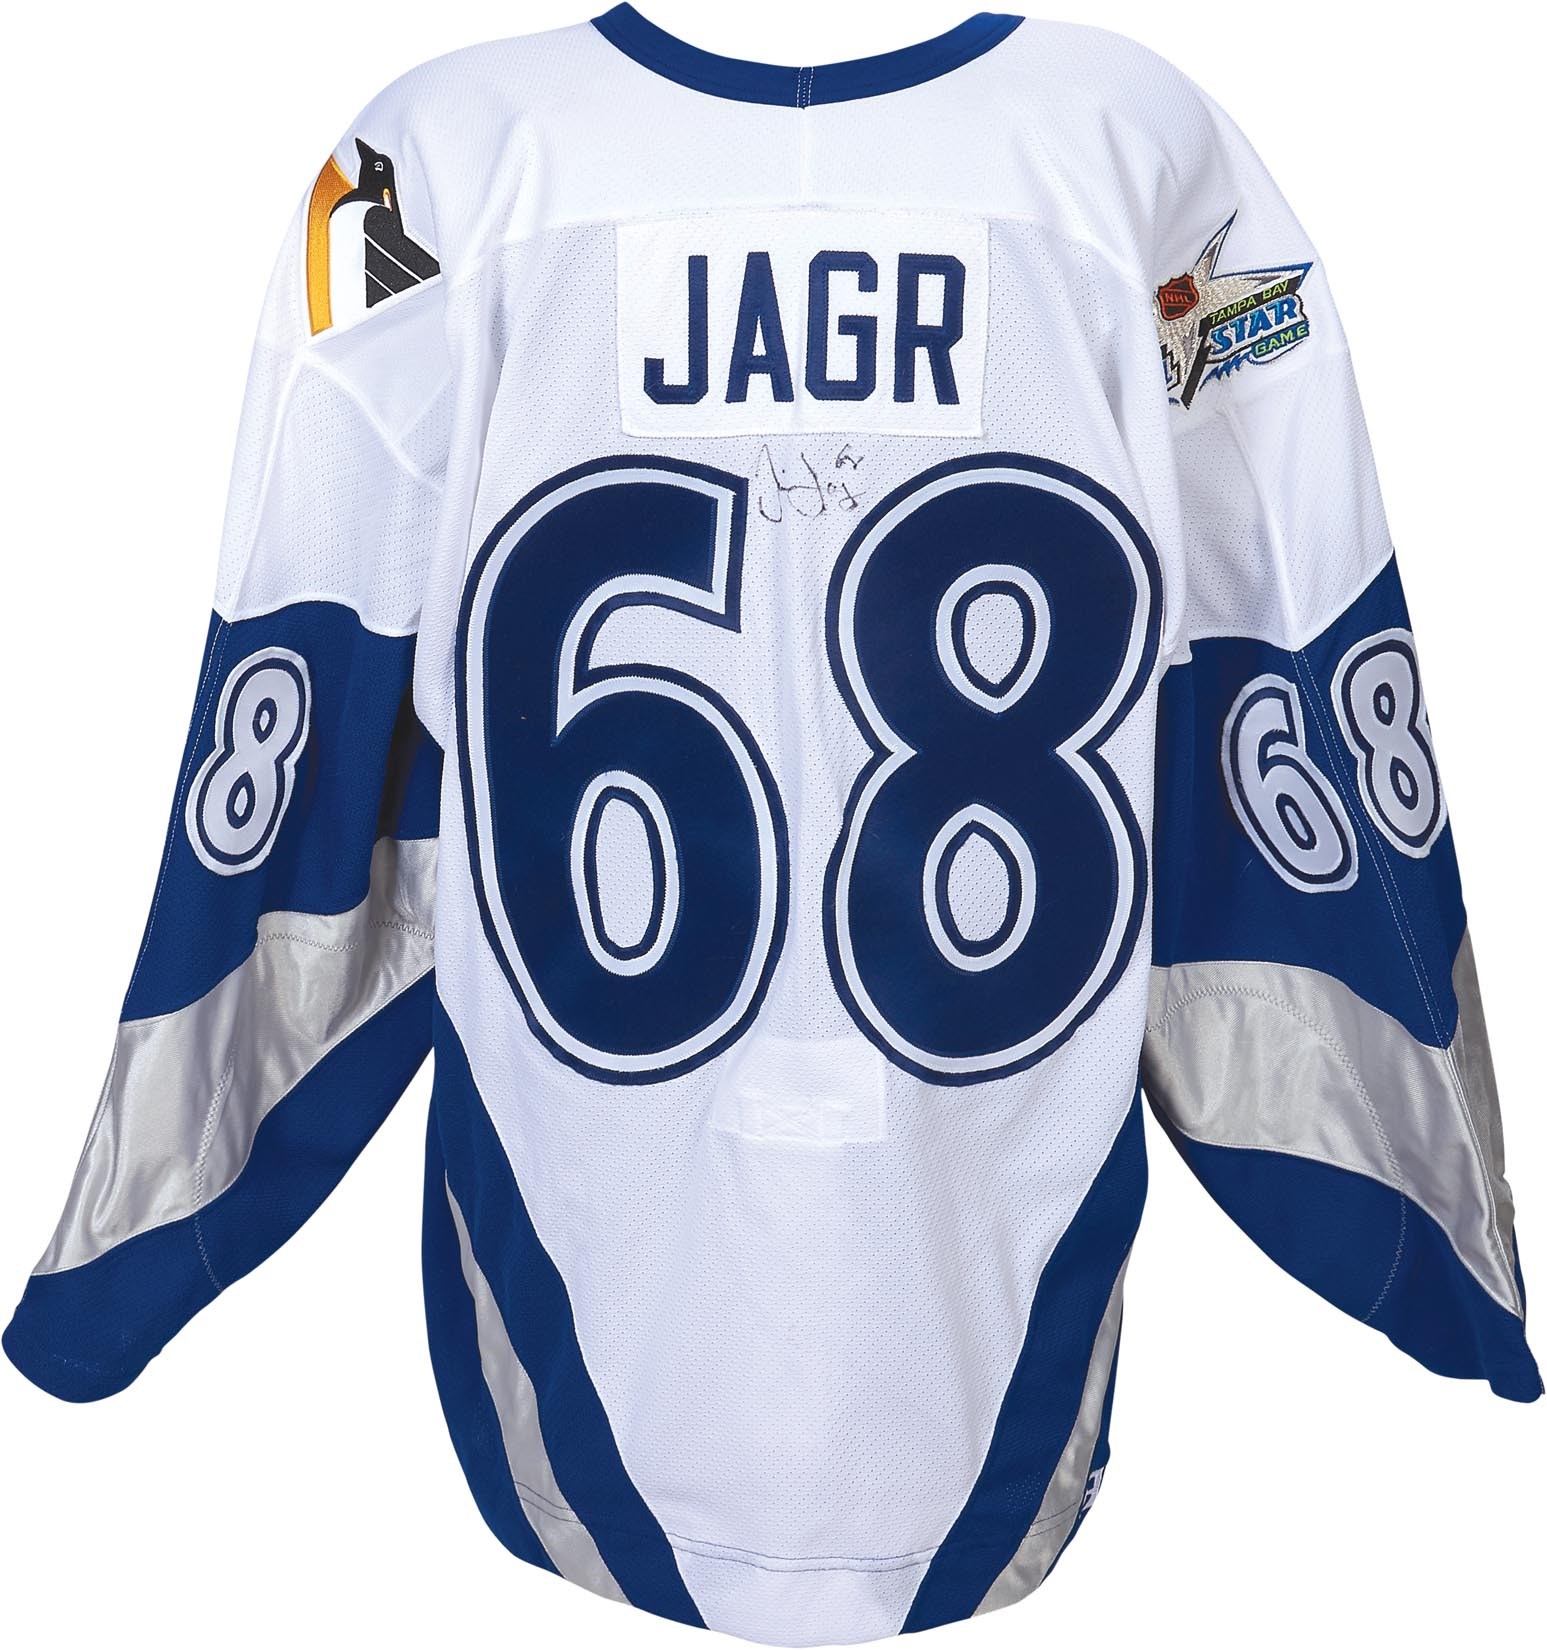 - 1999 Jaromir Jagr All-Star Game Worn Jersey